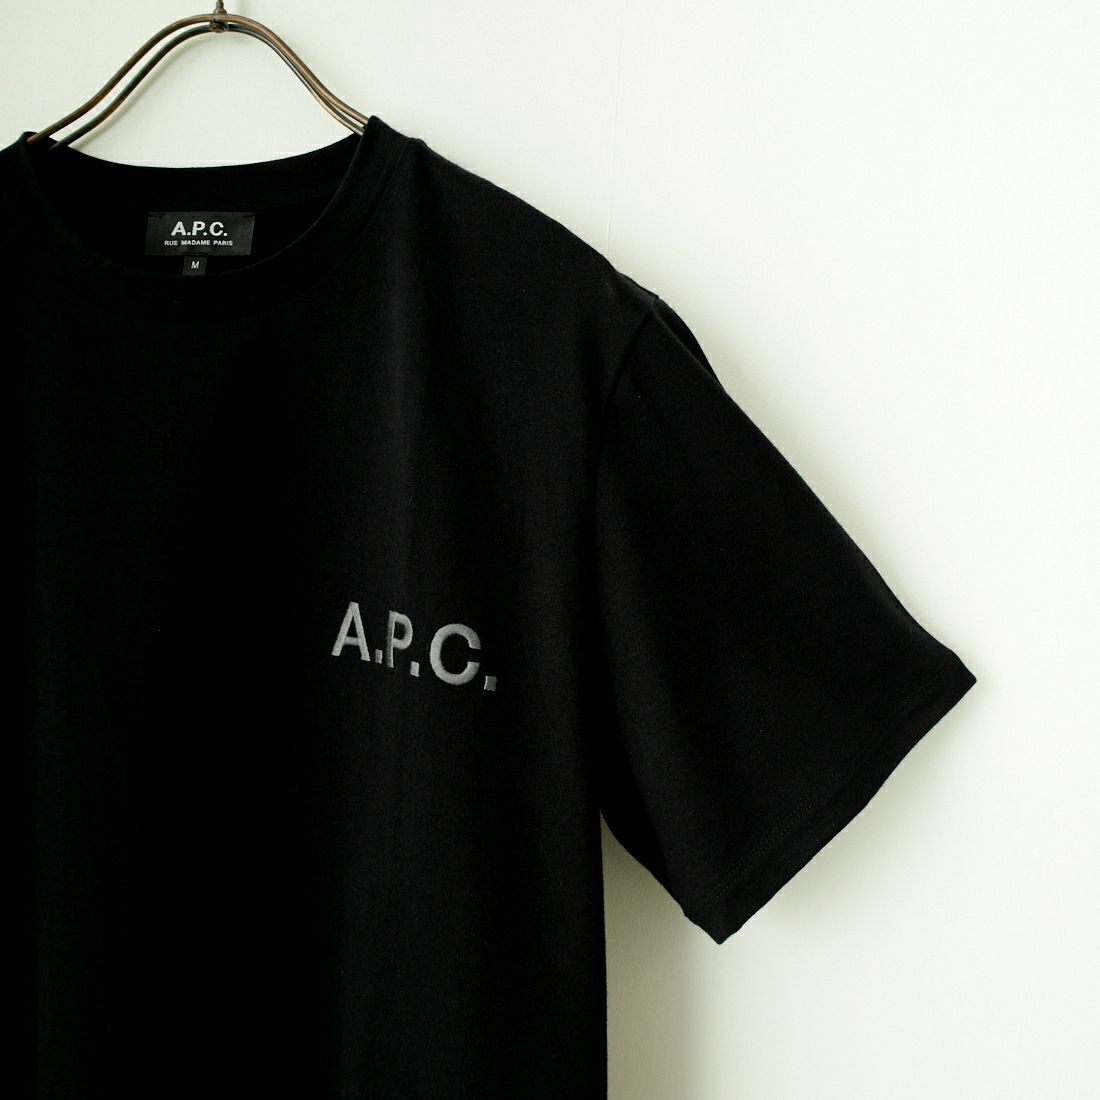 A.P.C. [アー・ペー・セー] 別注 ロゴ刺繍Tシャツ [BRODE-LOGO-JF] NOIR